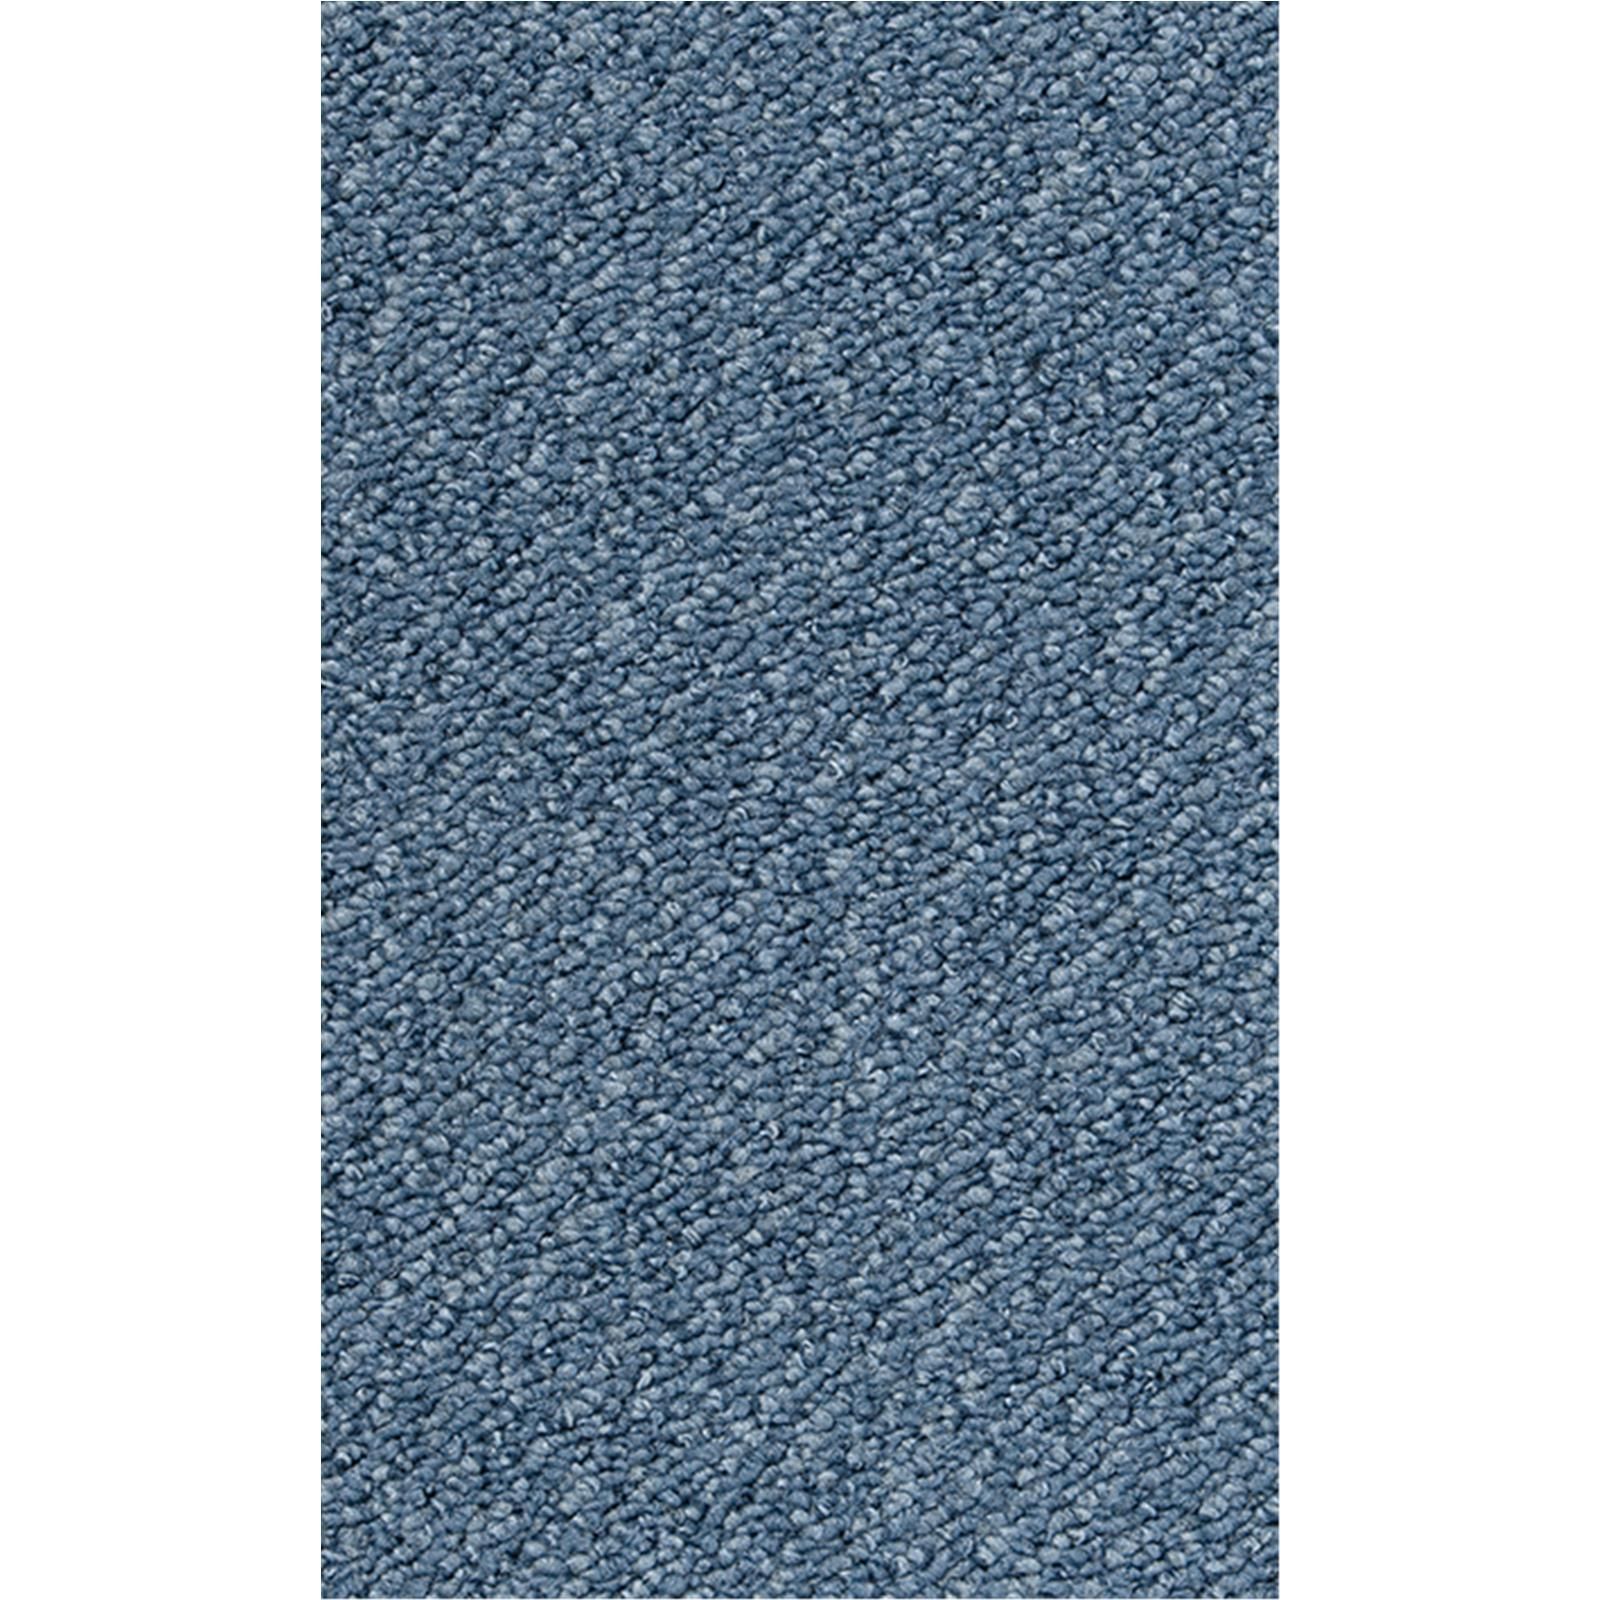 Teppichboden Vorwerk Passion 1093 TRAFFIC Schlinge Blau 3R16 - Rollenbreite 500 cm